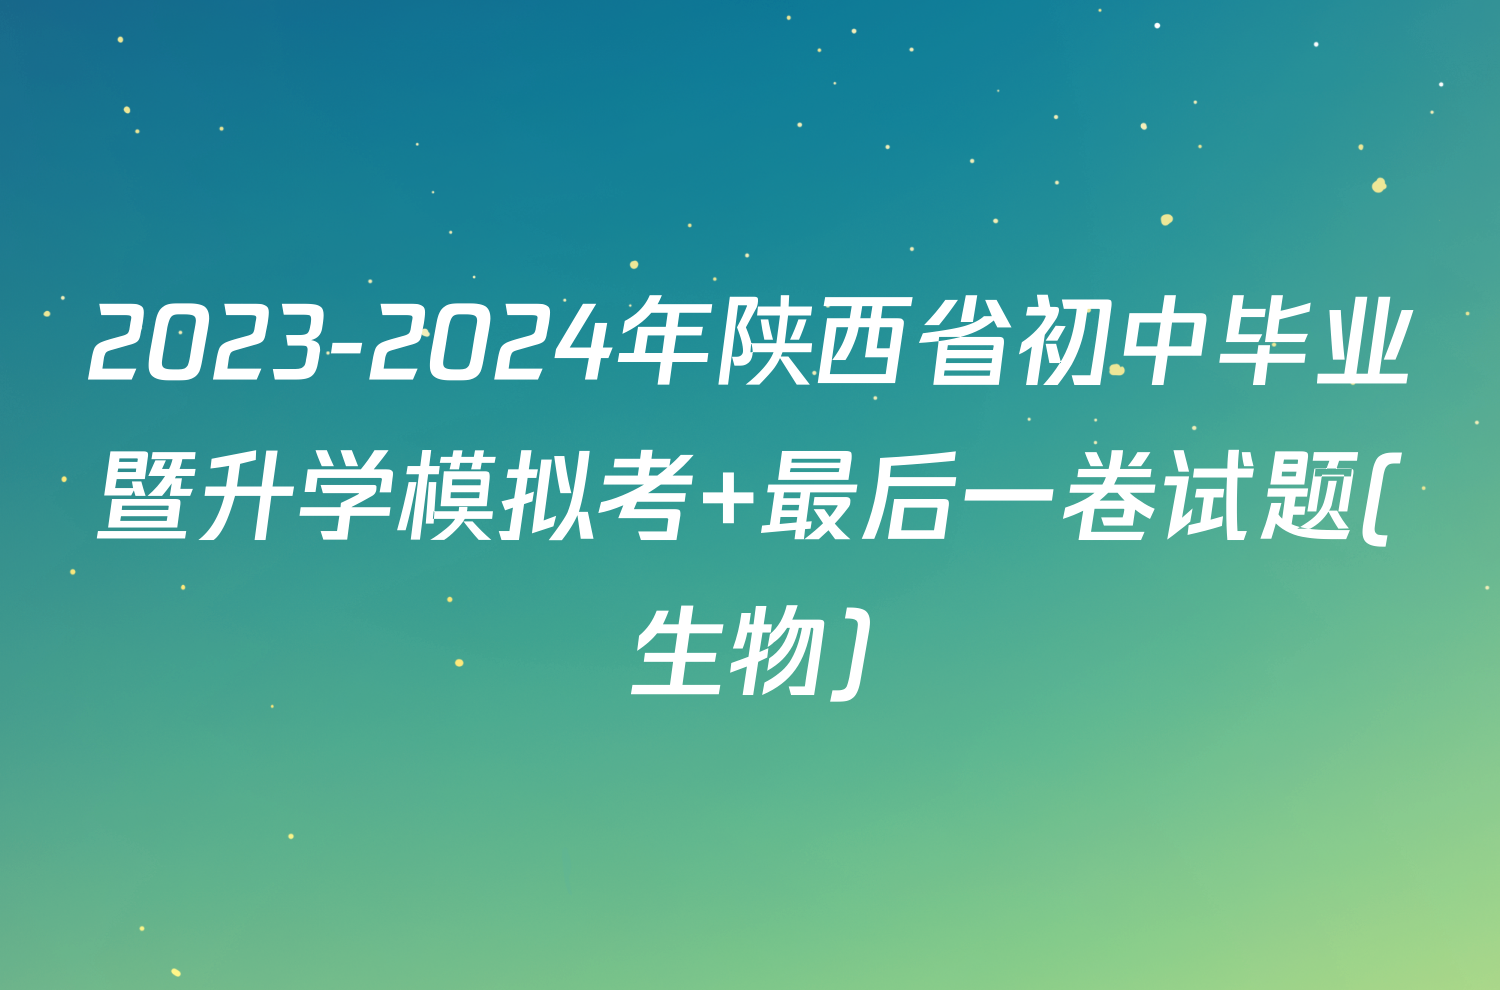 2023-2024年陕西省初中毕业暨升学模拟考 最后一卷试题(生物)